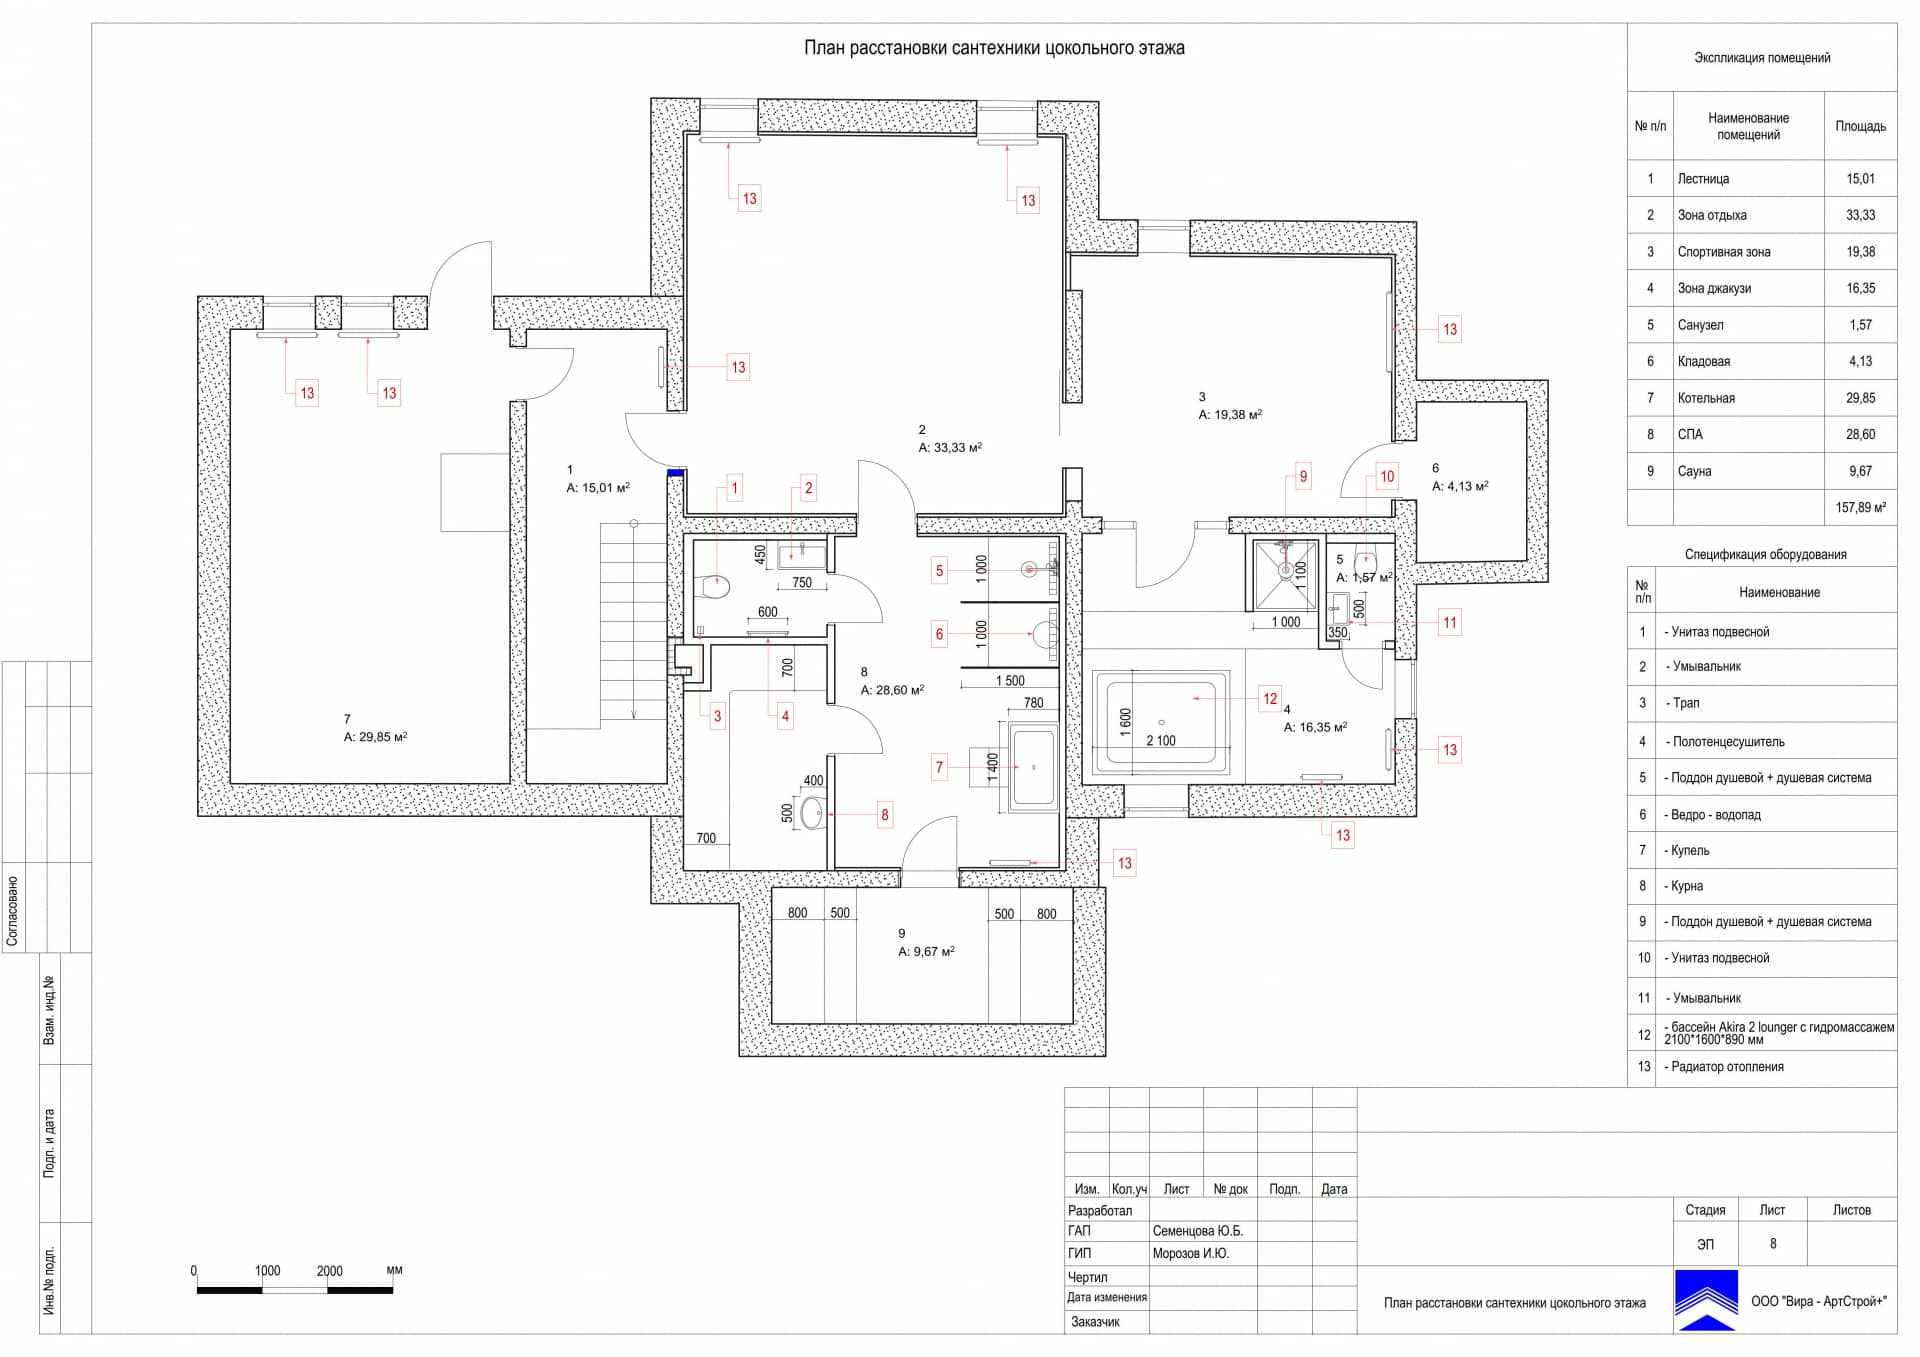 План расстановки сантехники цокольного этажа, дом 471 м² в КП «Сорочаны»